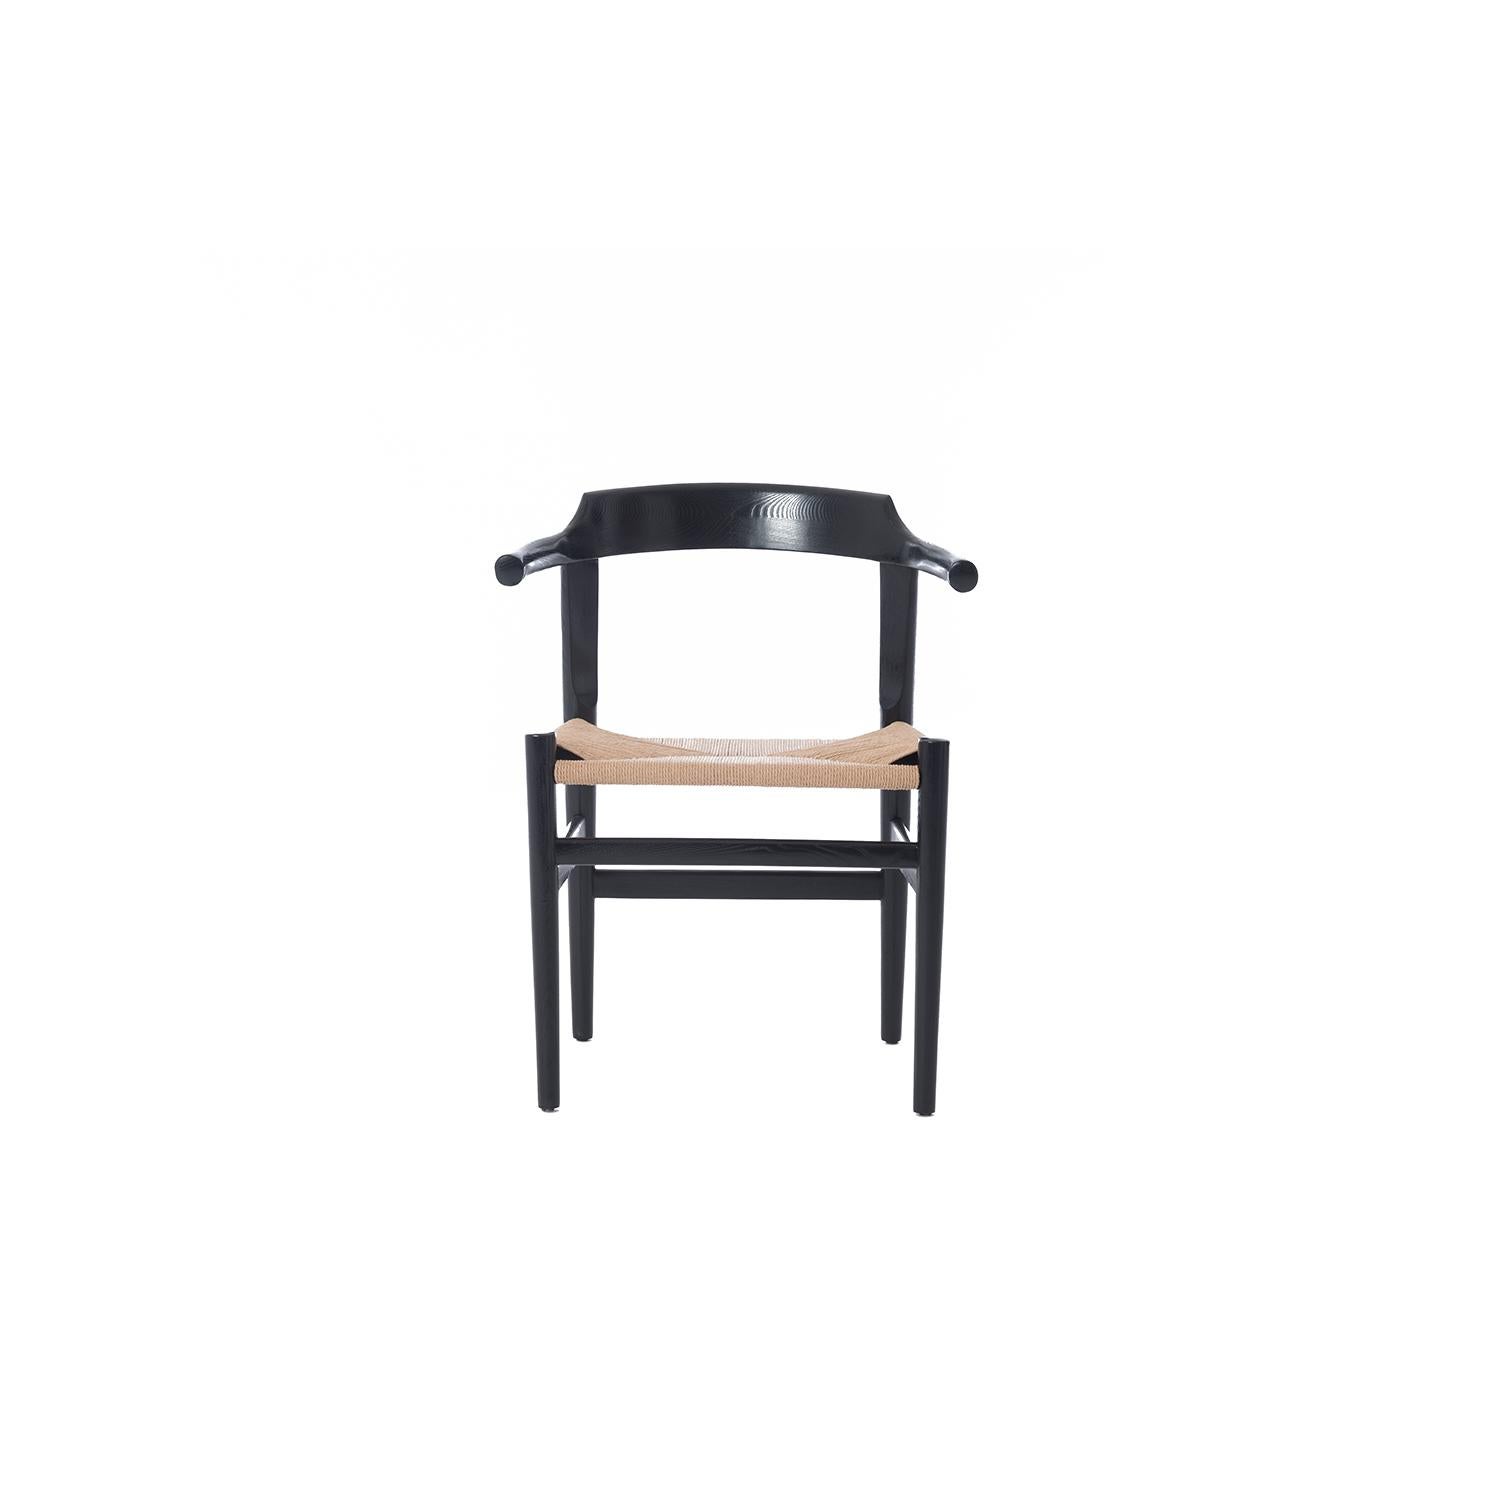 Dieser auffällige kleine Beistellstuhl hat einen neuen Sitz aus dänischem Kord. Der Rahmen ist aus gebeizter Eiche mit einem Hauch von Hochglanz.

Die professionelle und fachgerechte Restaurierung von Möbeln ist ein fester Bestandteil unserer